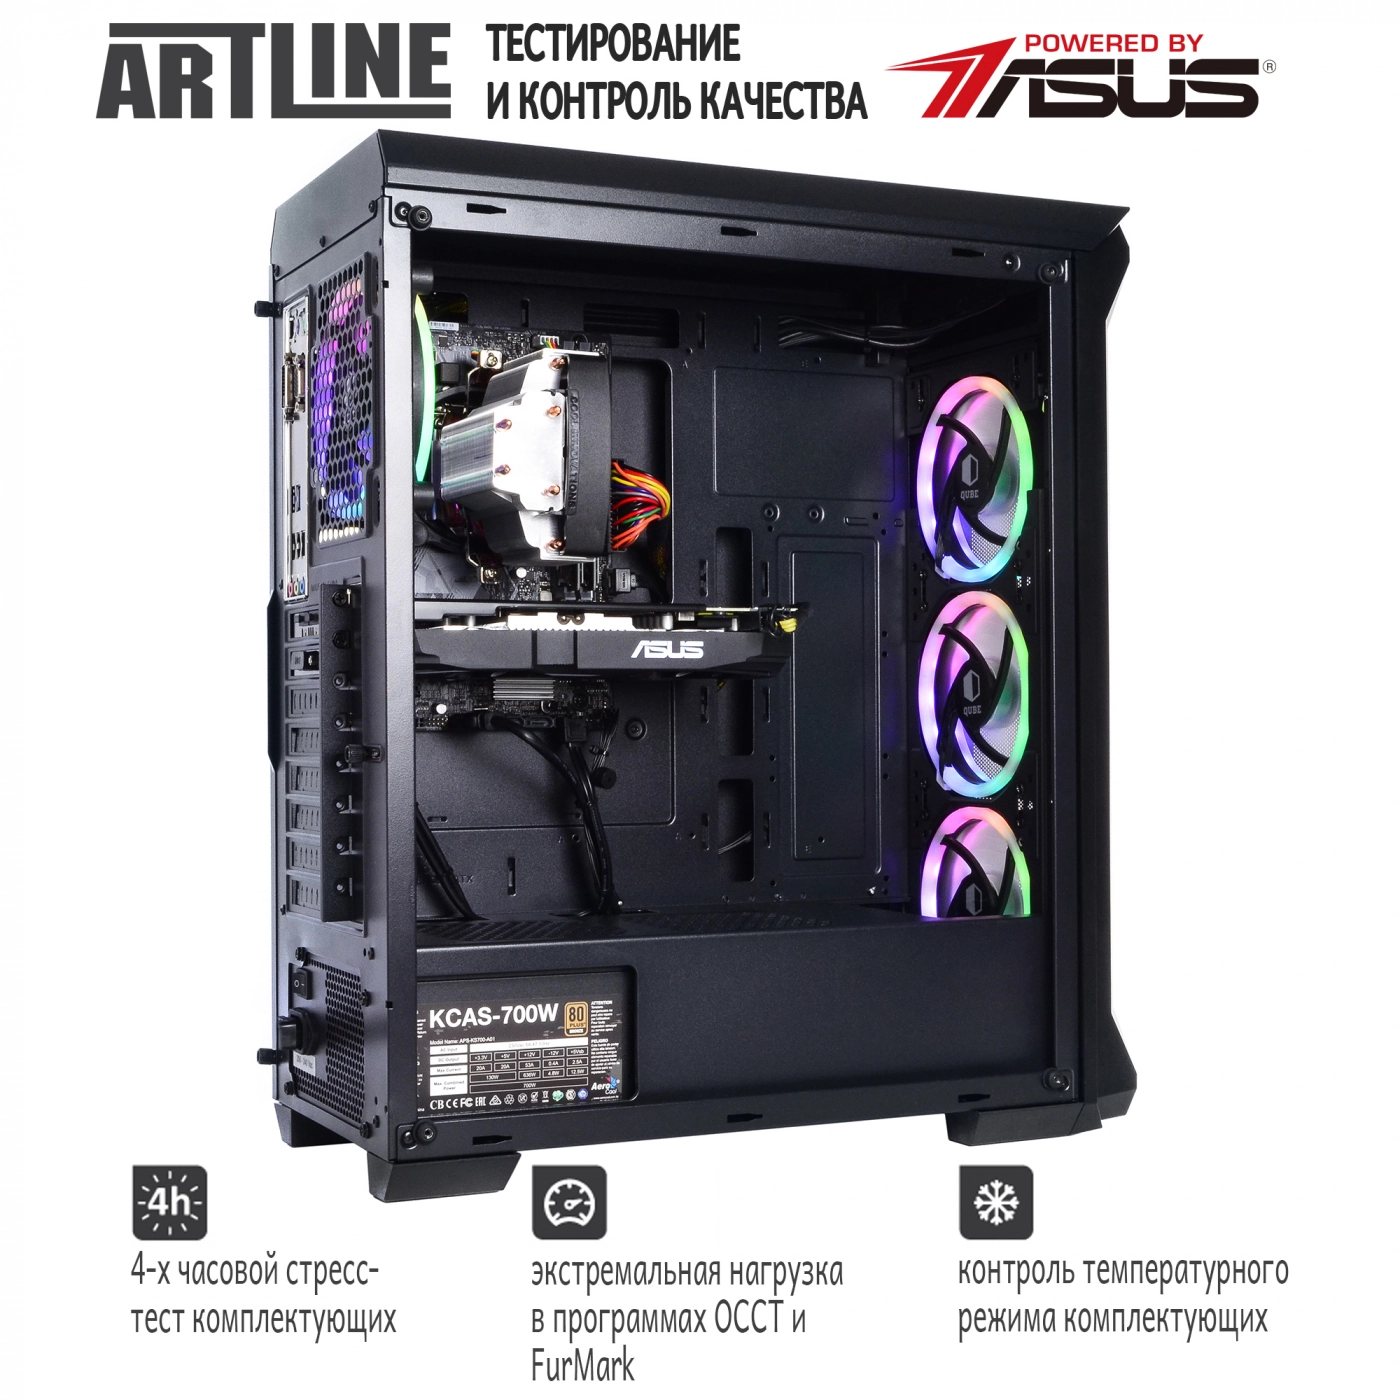 Купить Компьютер ARTLINE Gaming X75v11 - фото 6